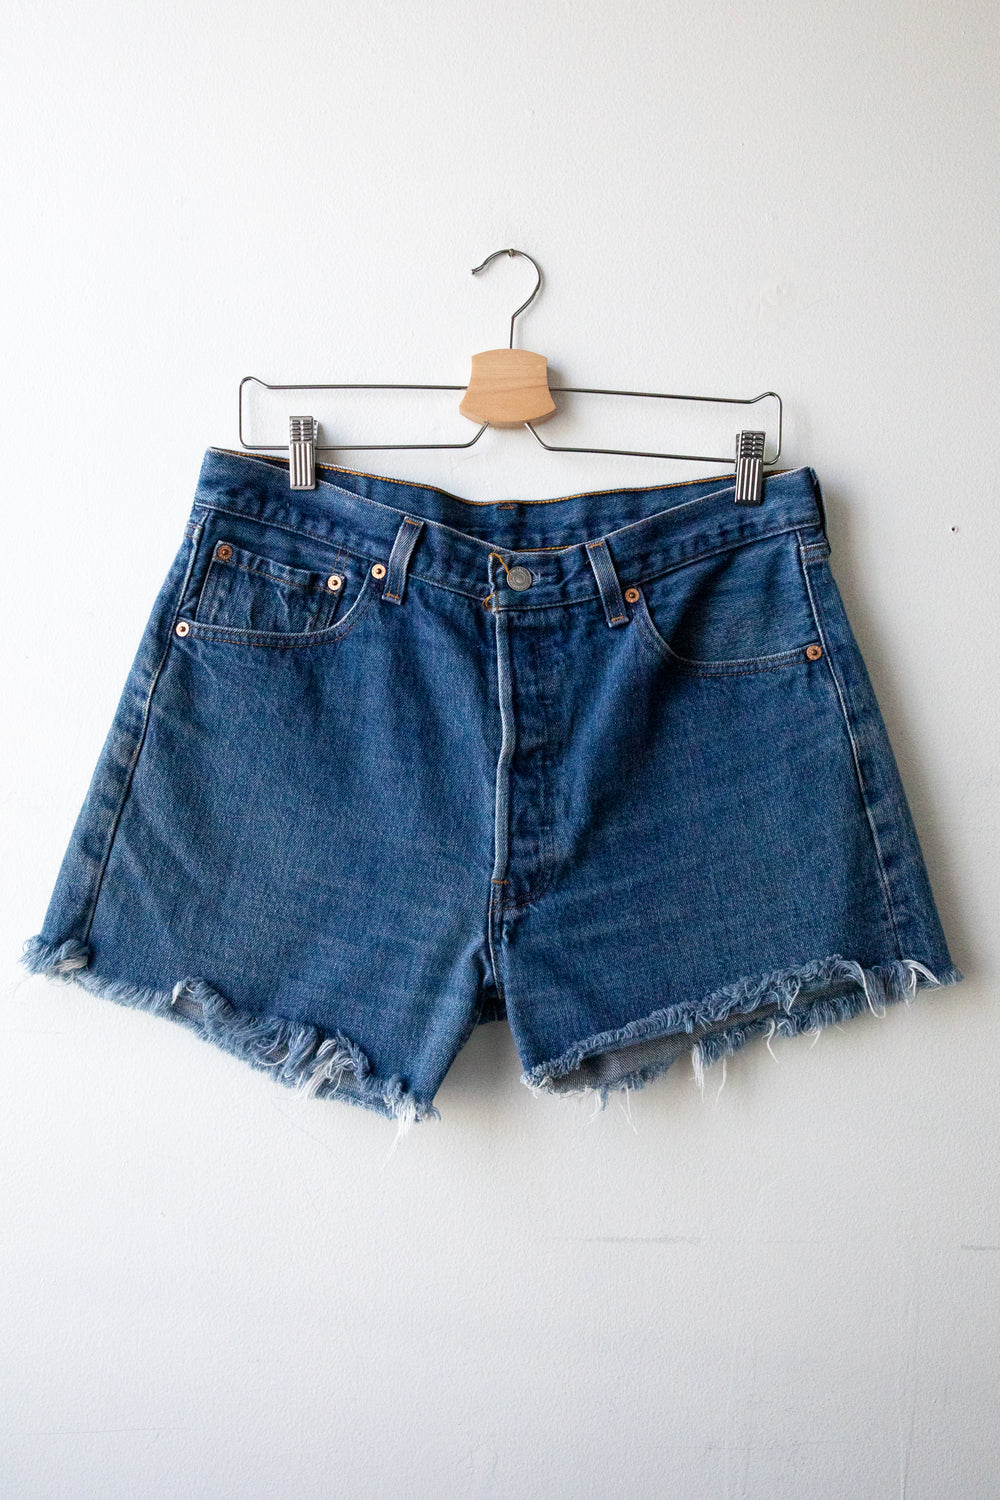 Vintage Levi's Shorts 004